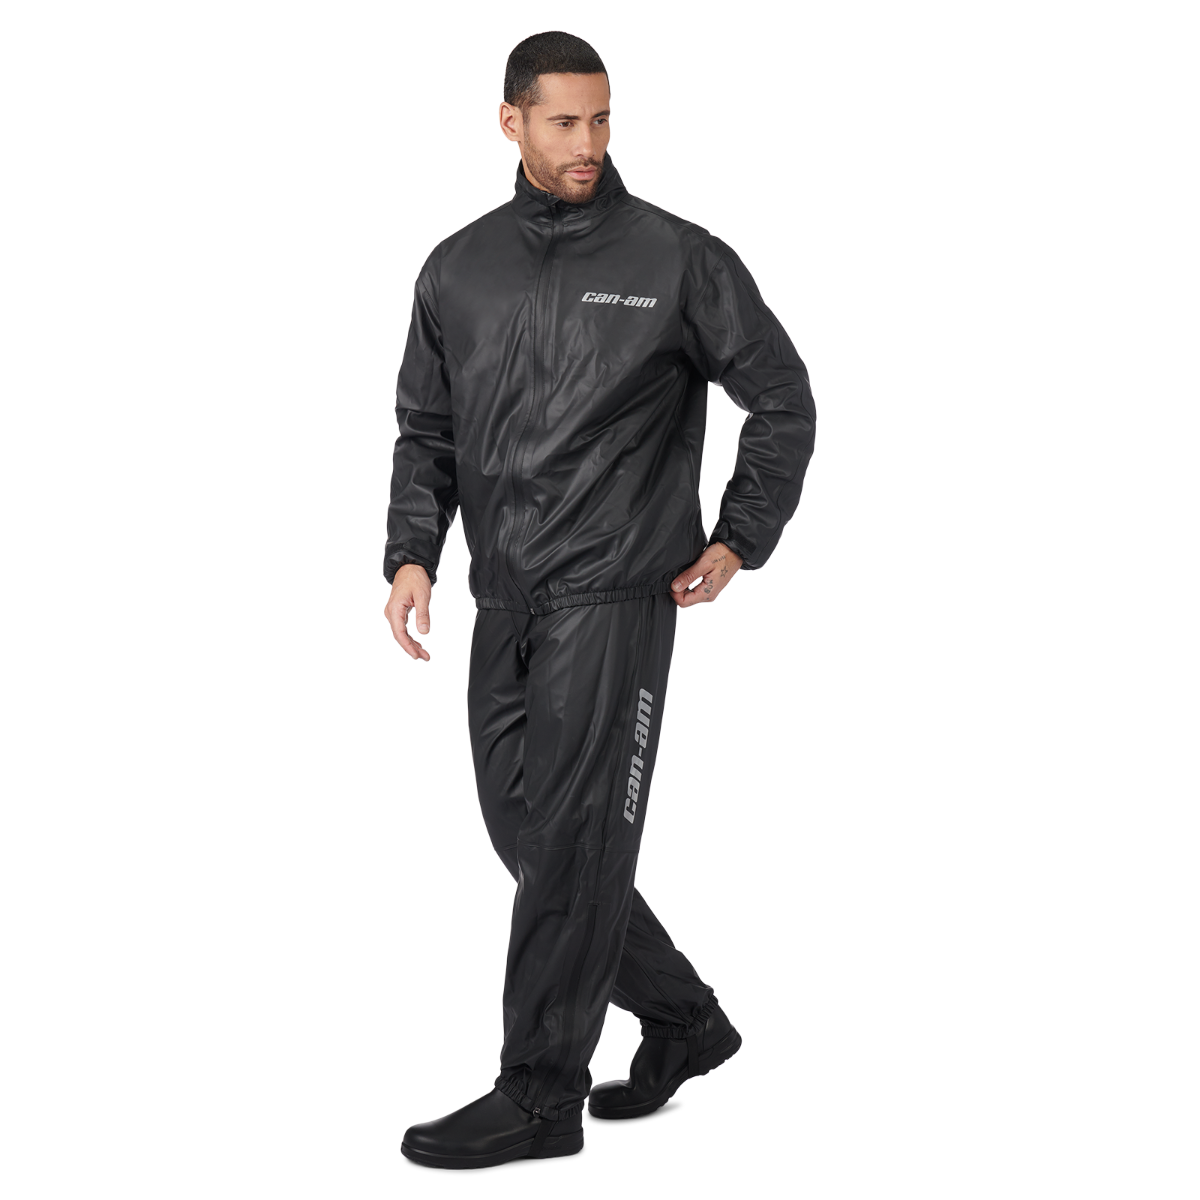 Can-Am Spyder Rain Suit Kit